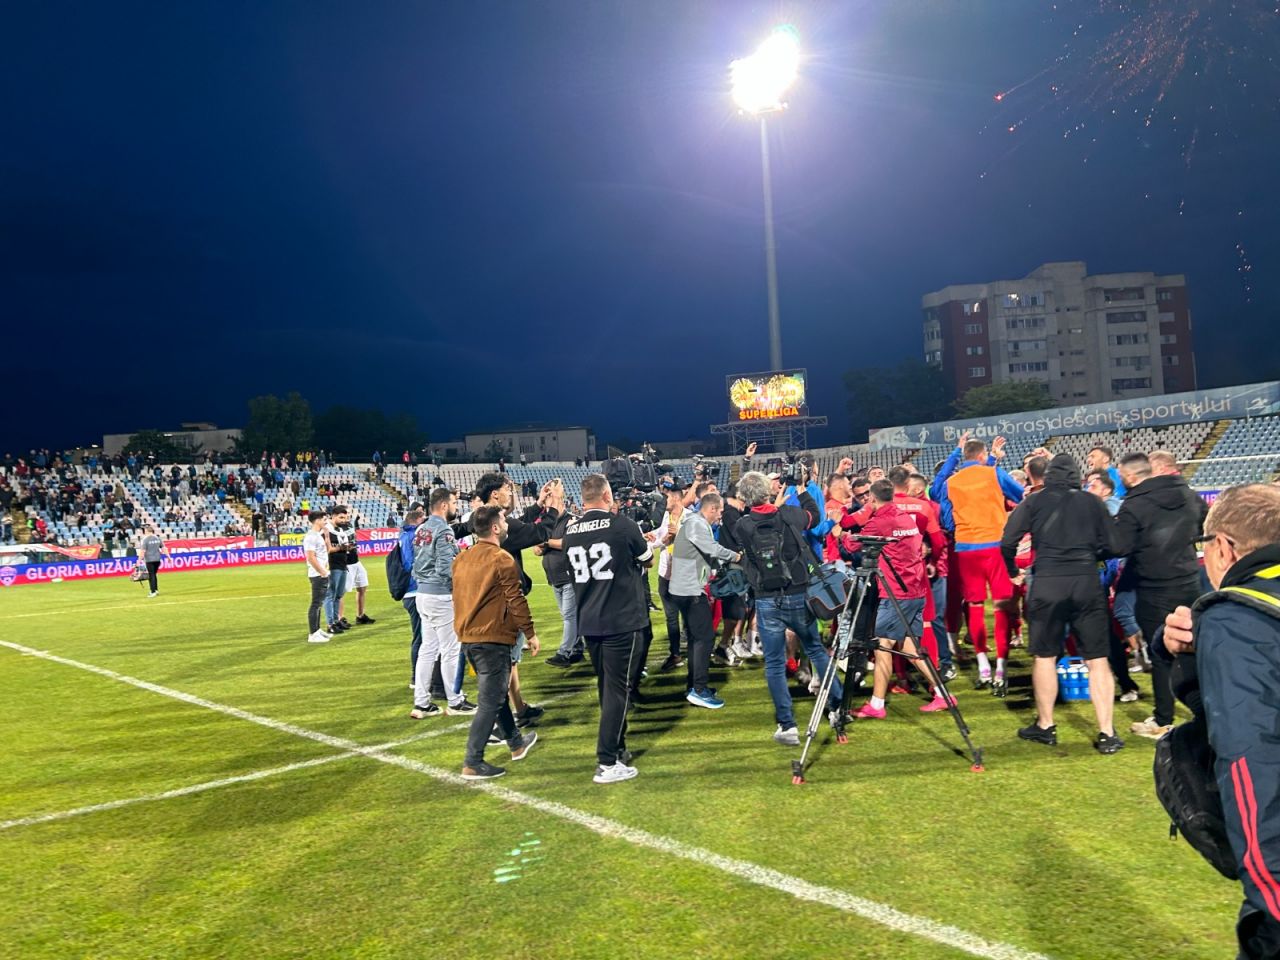 Sărbătoare la Buzău! Fotbaliștii s-au bucurat alături de fani în urma promovării istorice. Vali Dumitrache: ”Am muncit un an pentru asta”_1